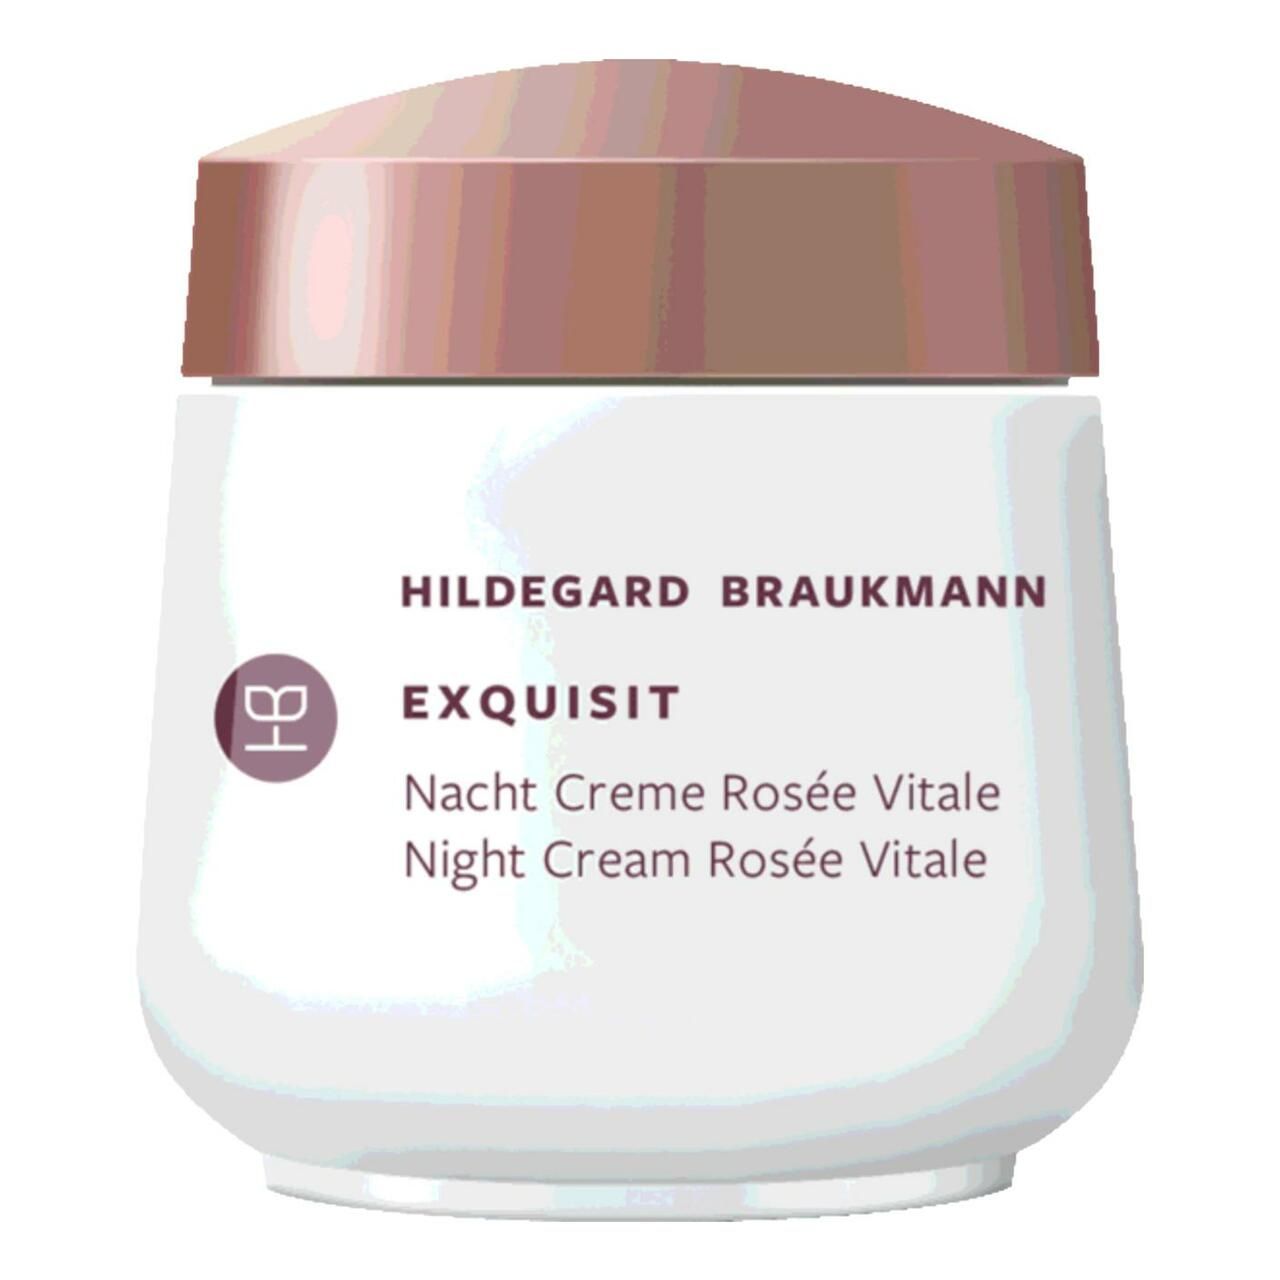 Hildegard Braukmann, Exquisit Creme Rosée Vitale Nacht